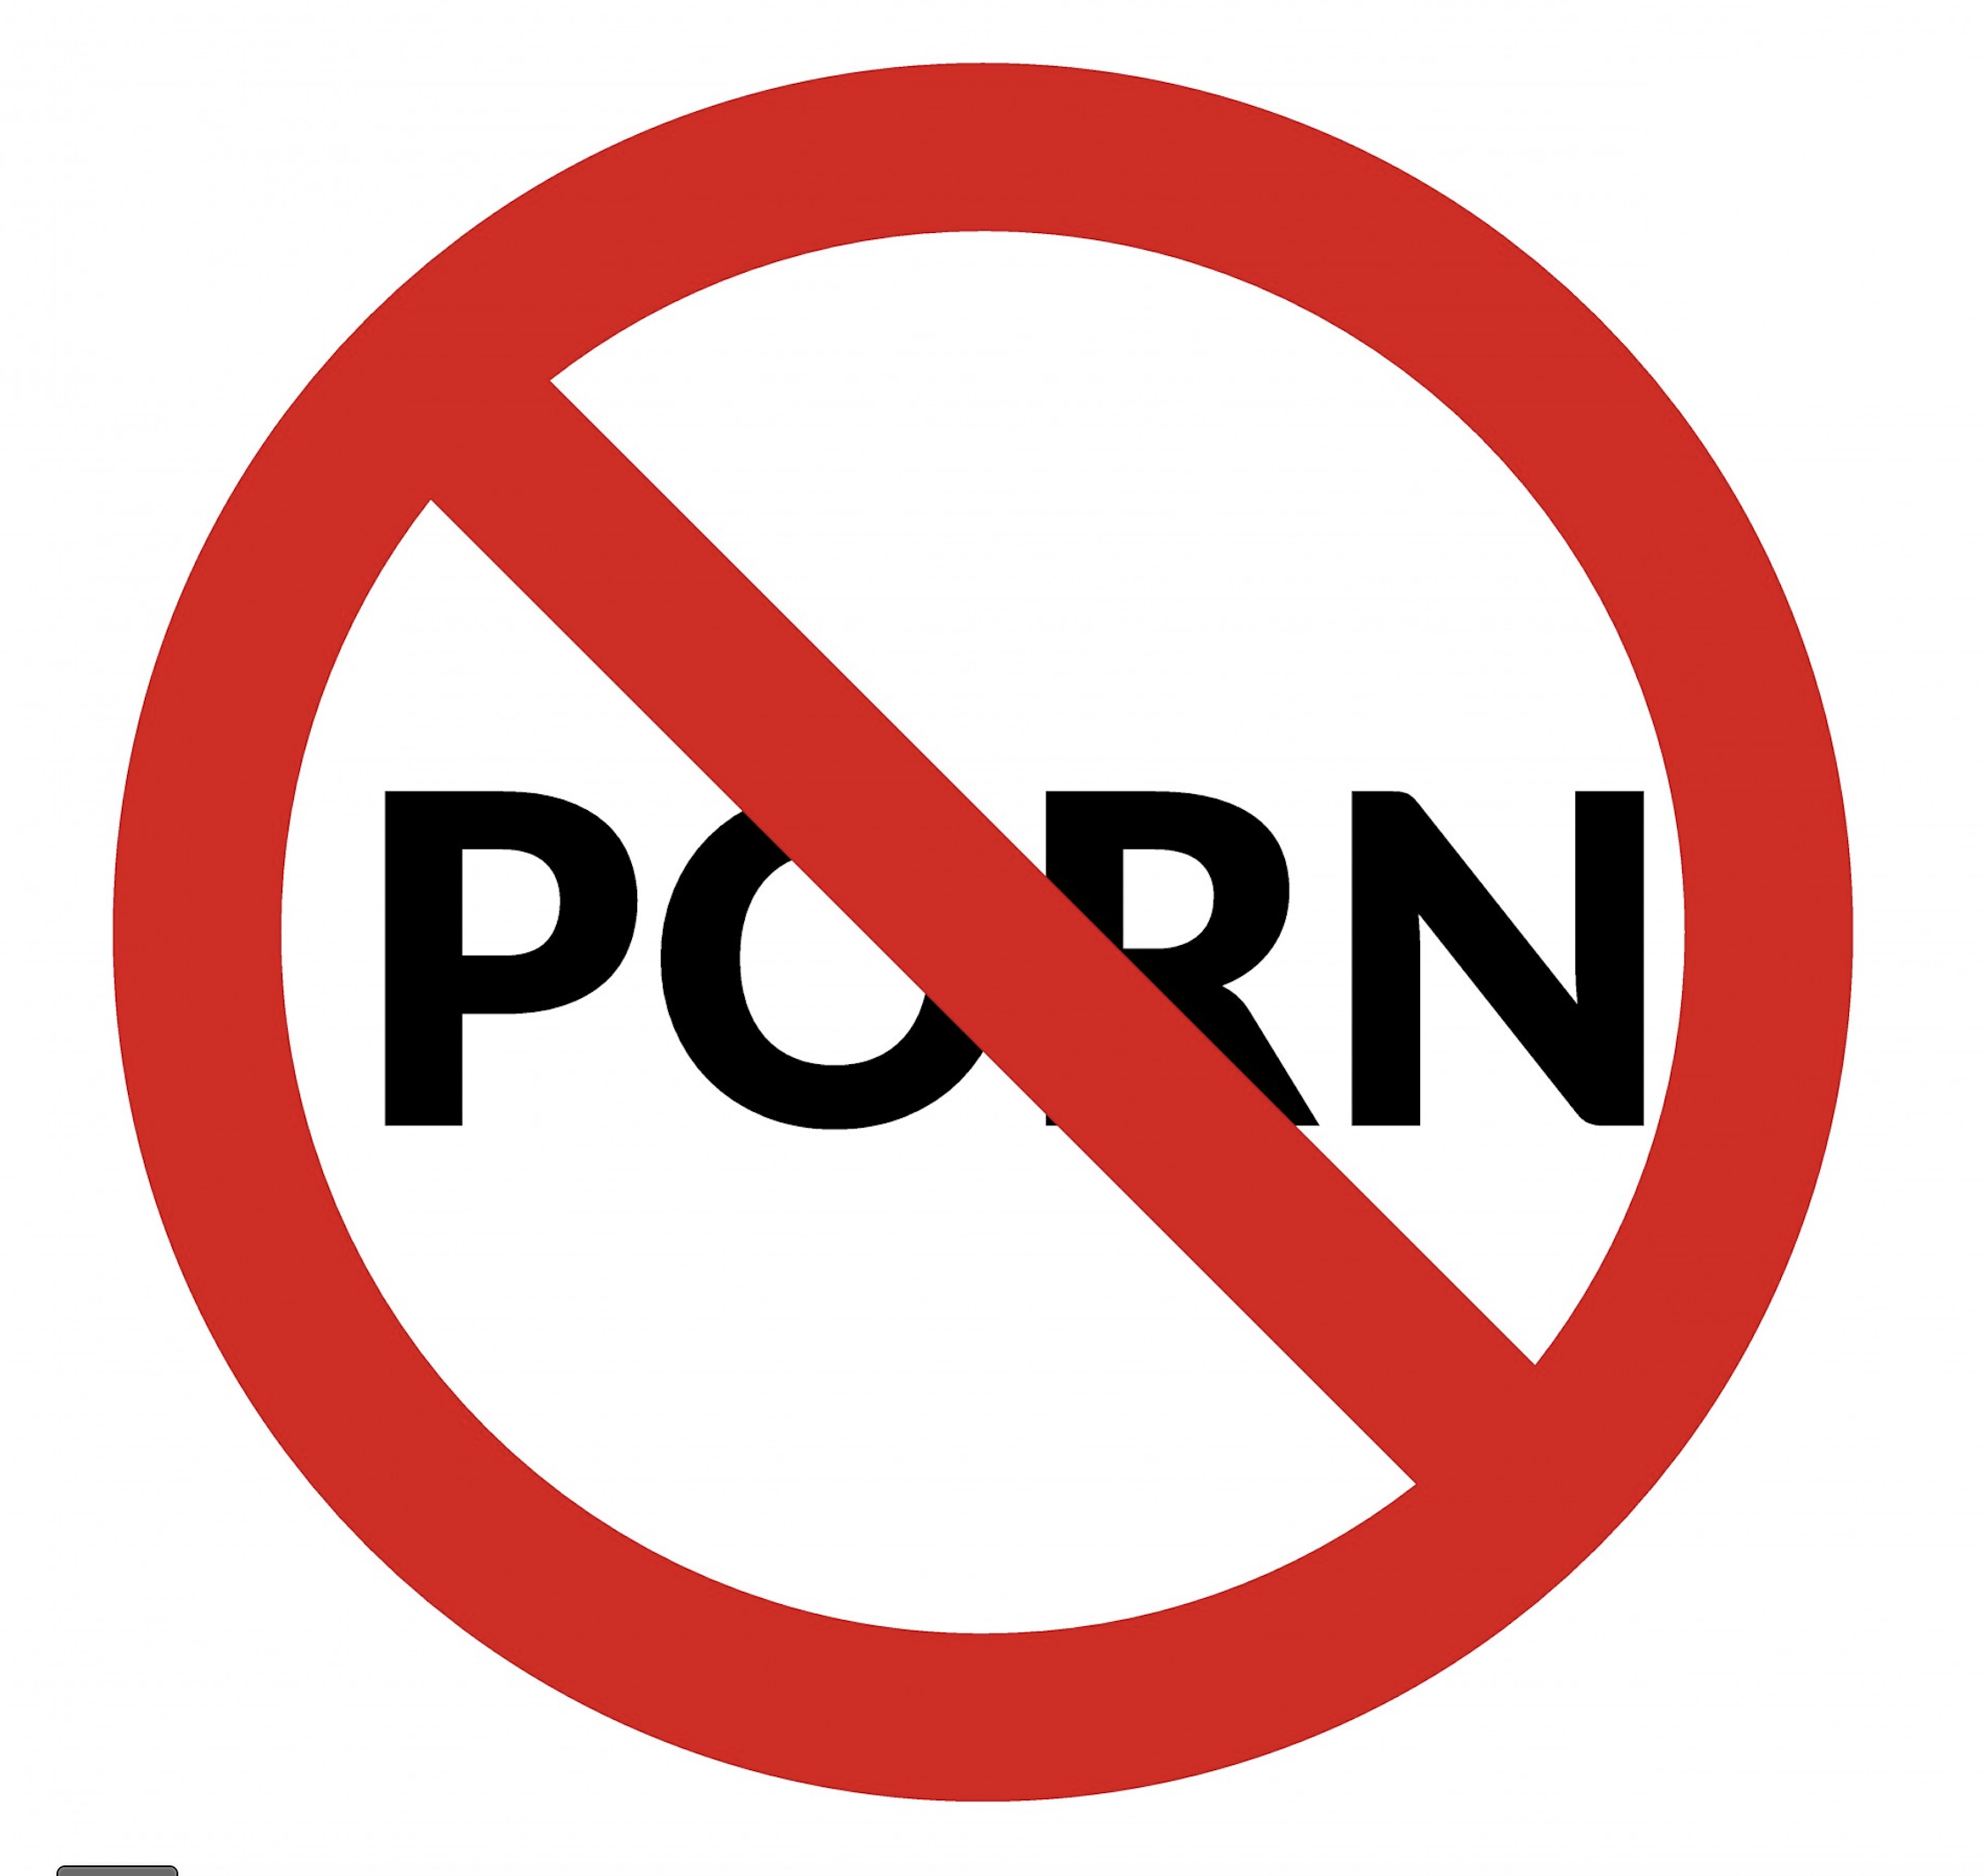 NO PORN sign